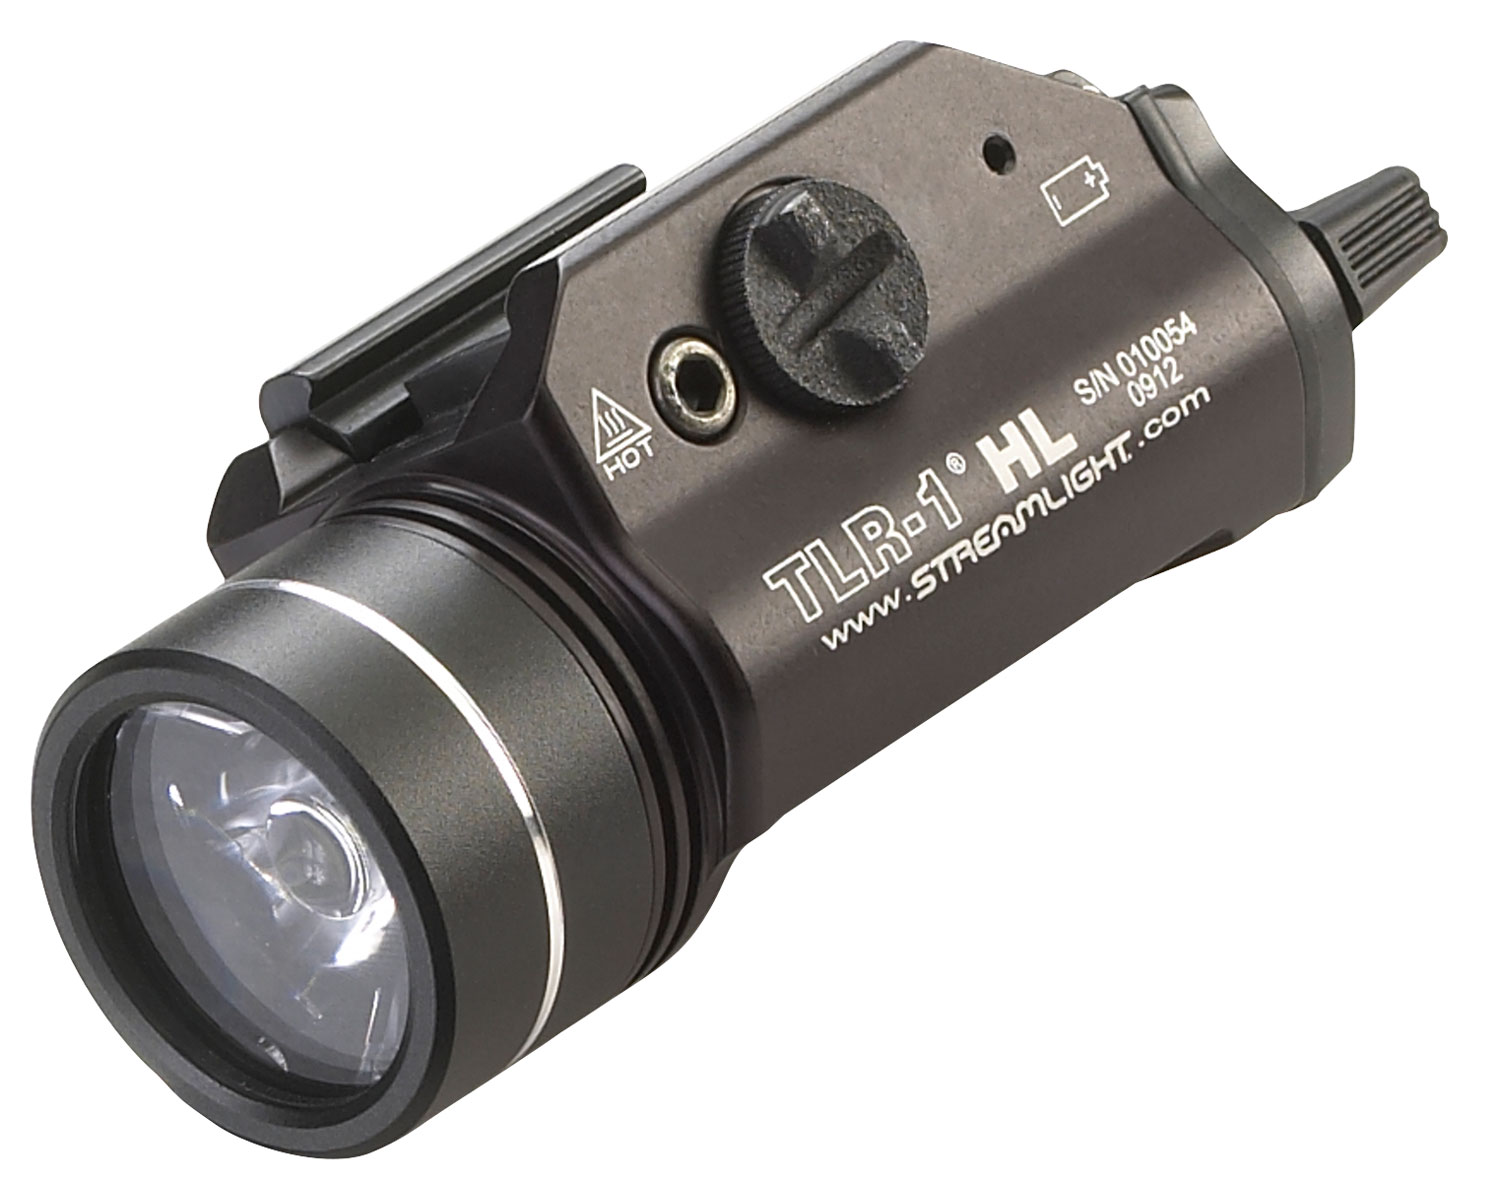 Streamlight 69260 TLR-1 HL Weapon Light Black Anodized For Handguns 1000 Lumens White LED